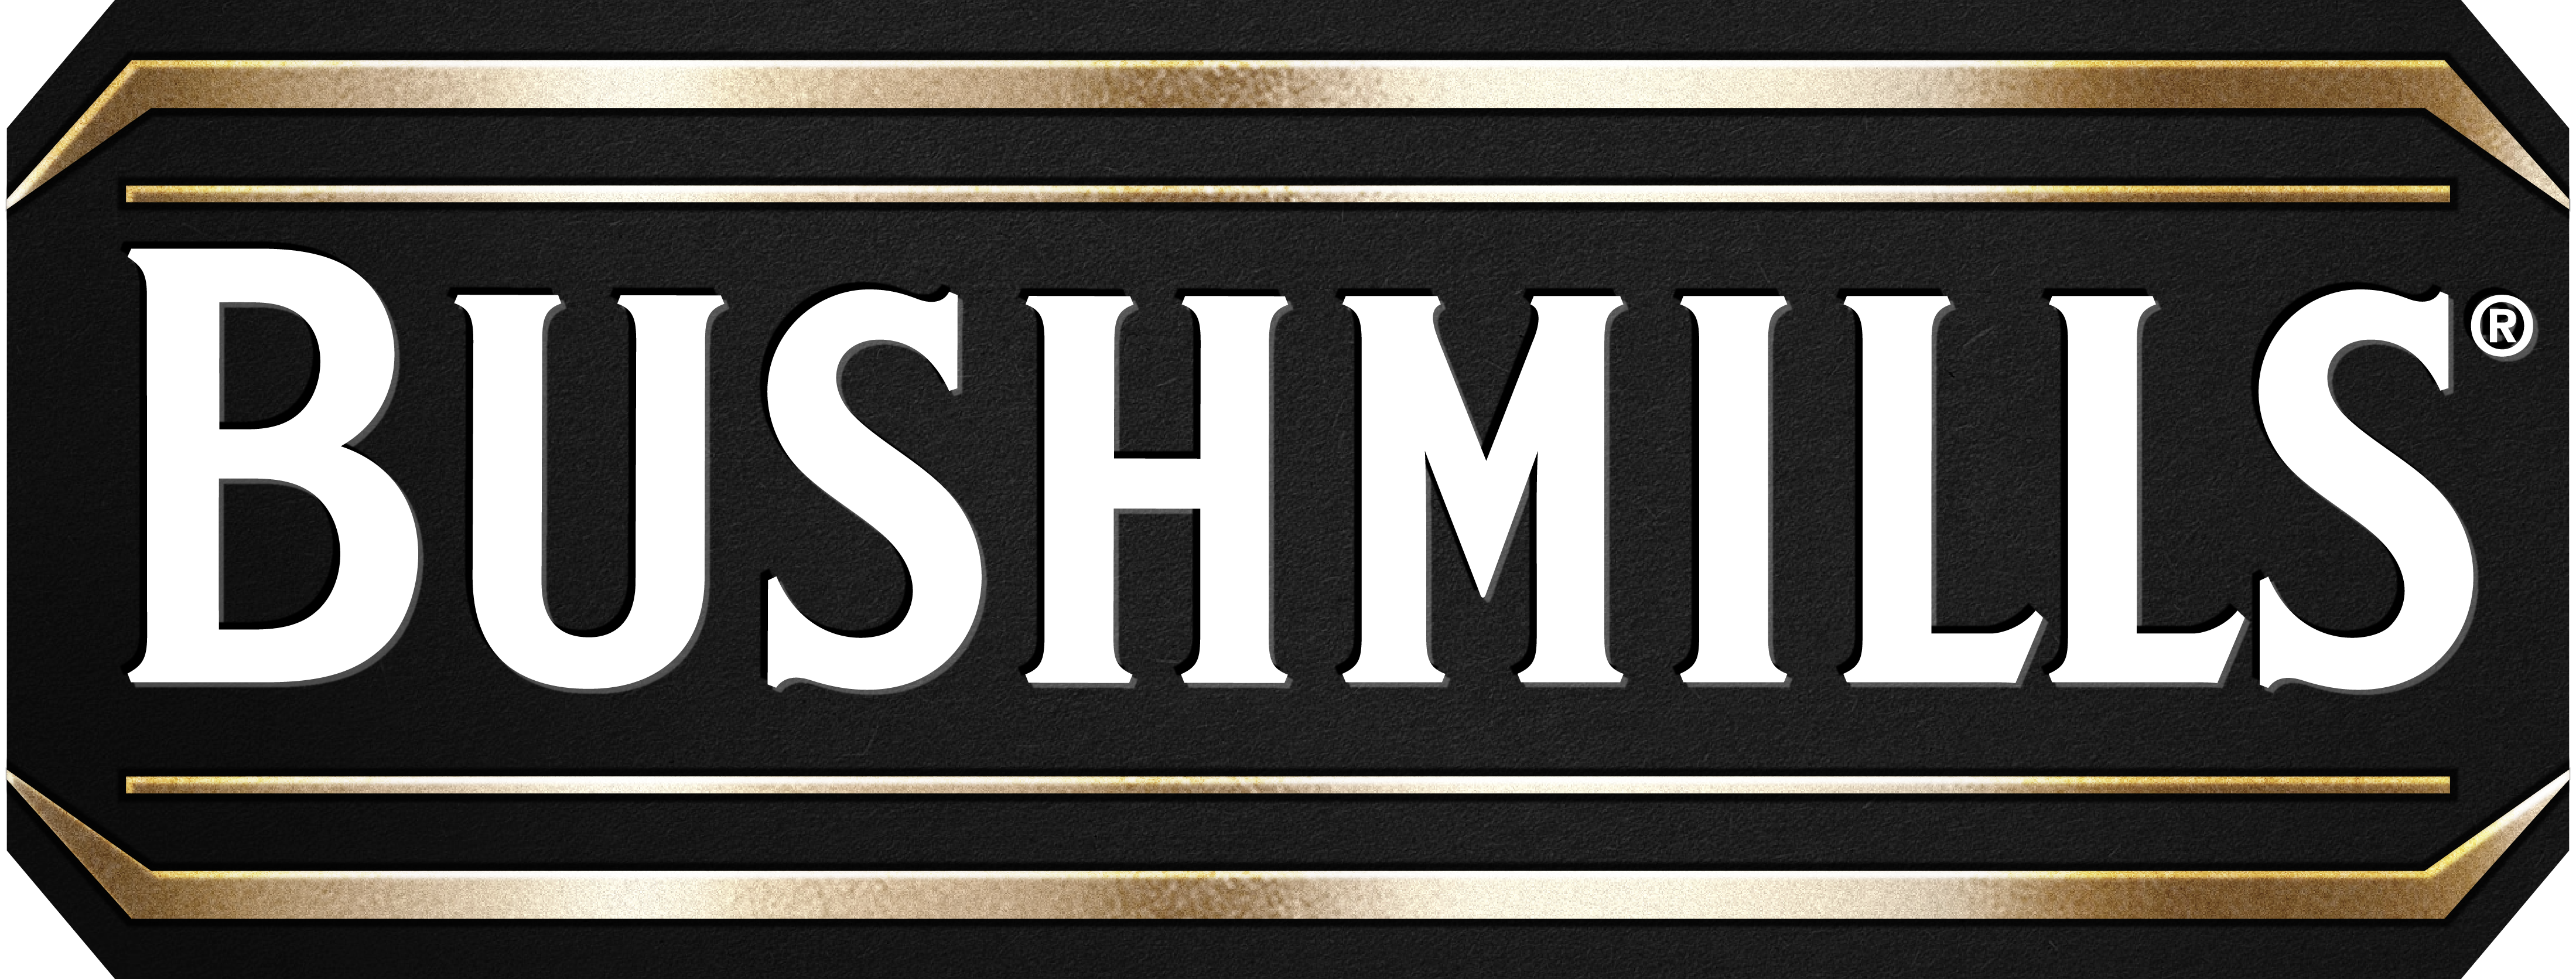 Bushmills Sponsoring Logo